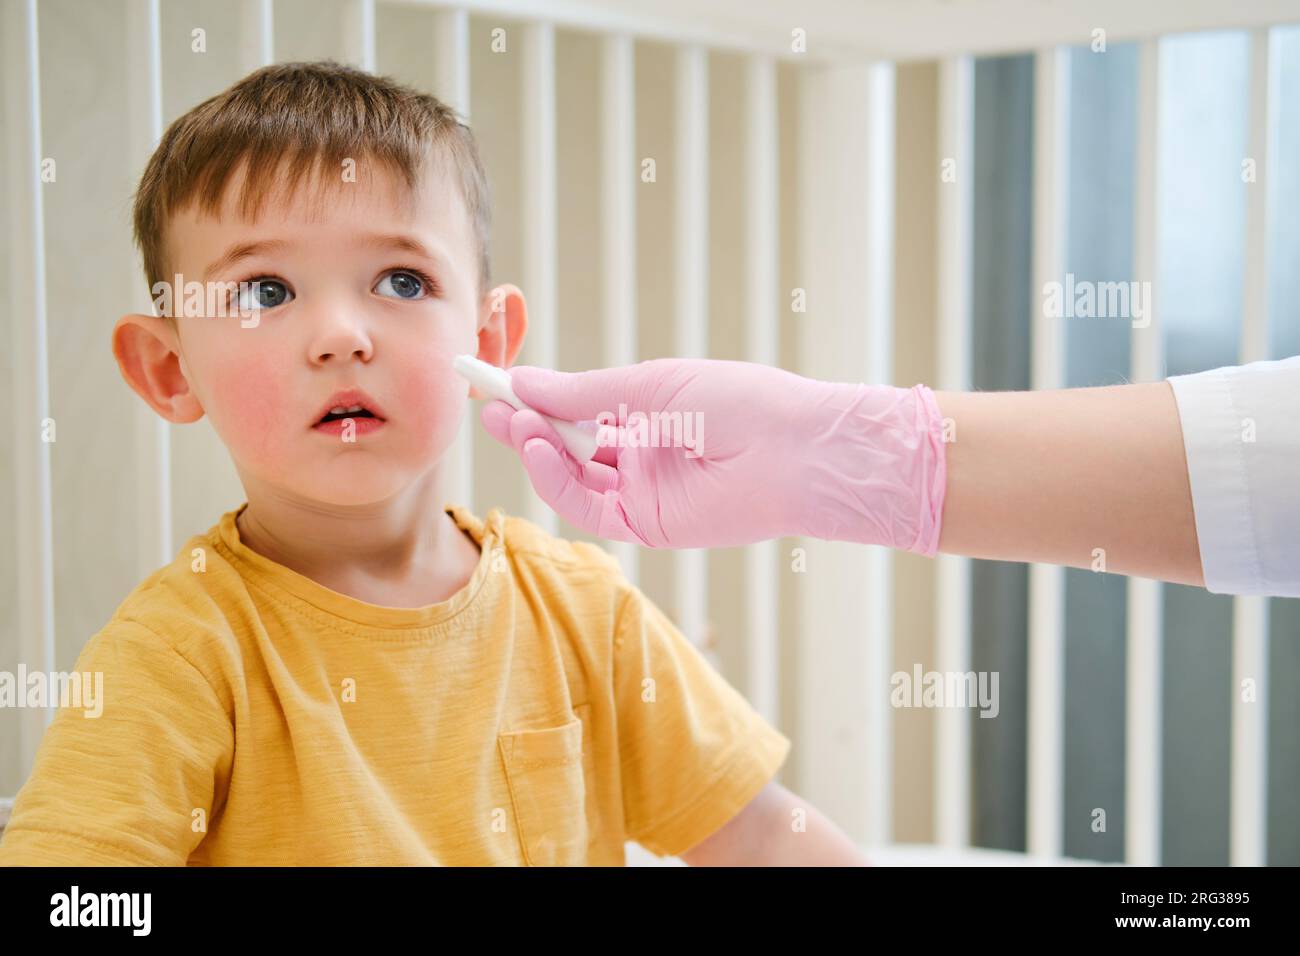 Durante l'esame medico, il pediatra ha usato un tampone di cotone per pulire delicatamente il naso del bambino. Bambino di circa due anni (un anno e undici mesi) Foto Stock